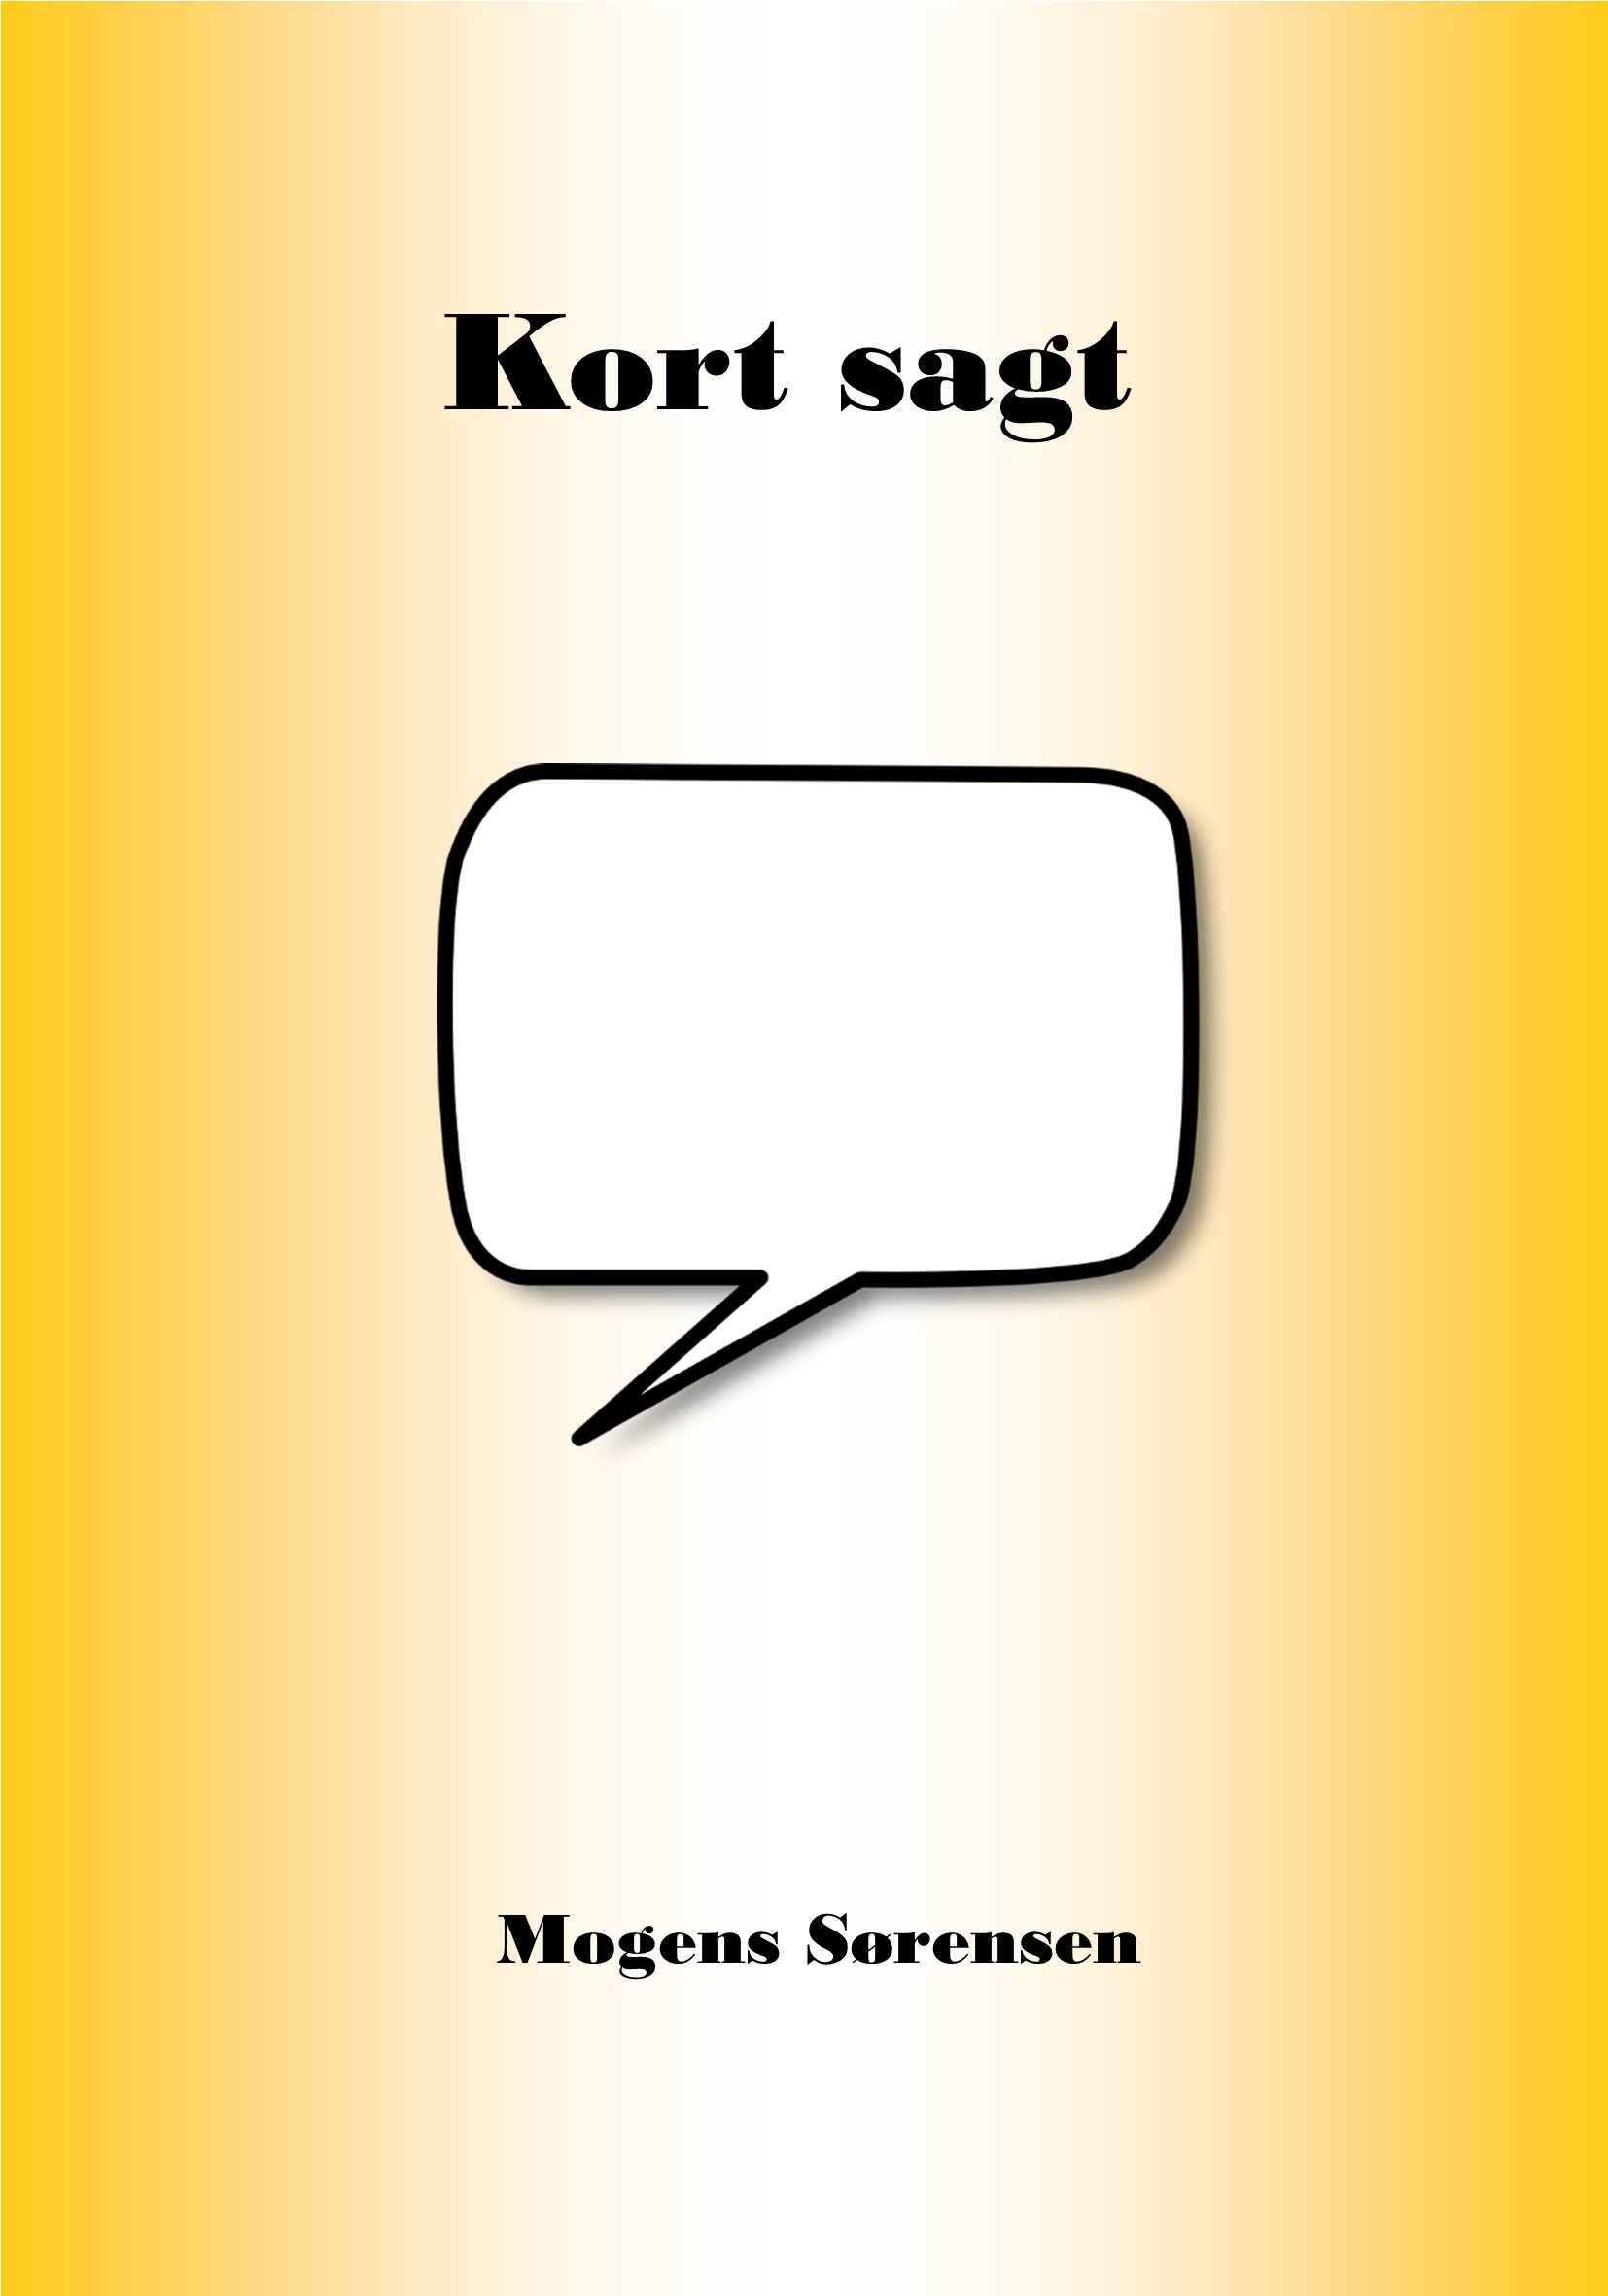 Coverbillede til digtsamlingen Kort Sagt med en taleboble.